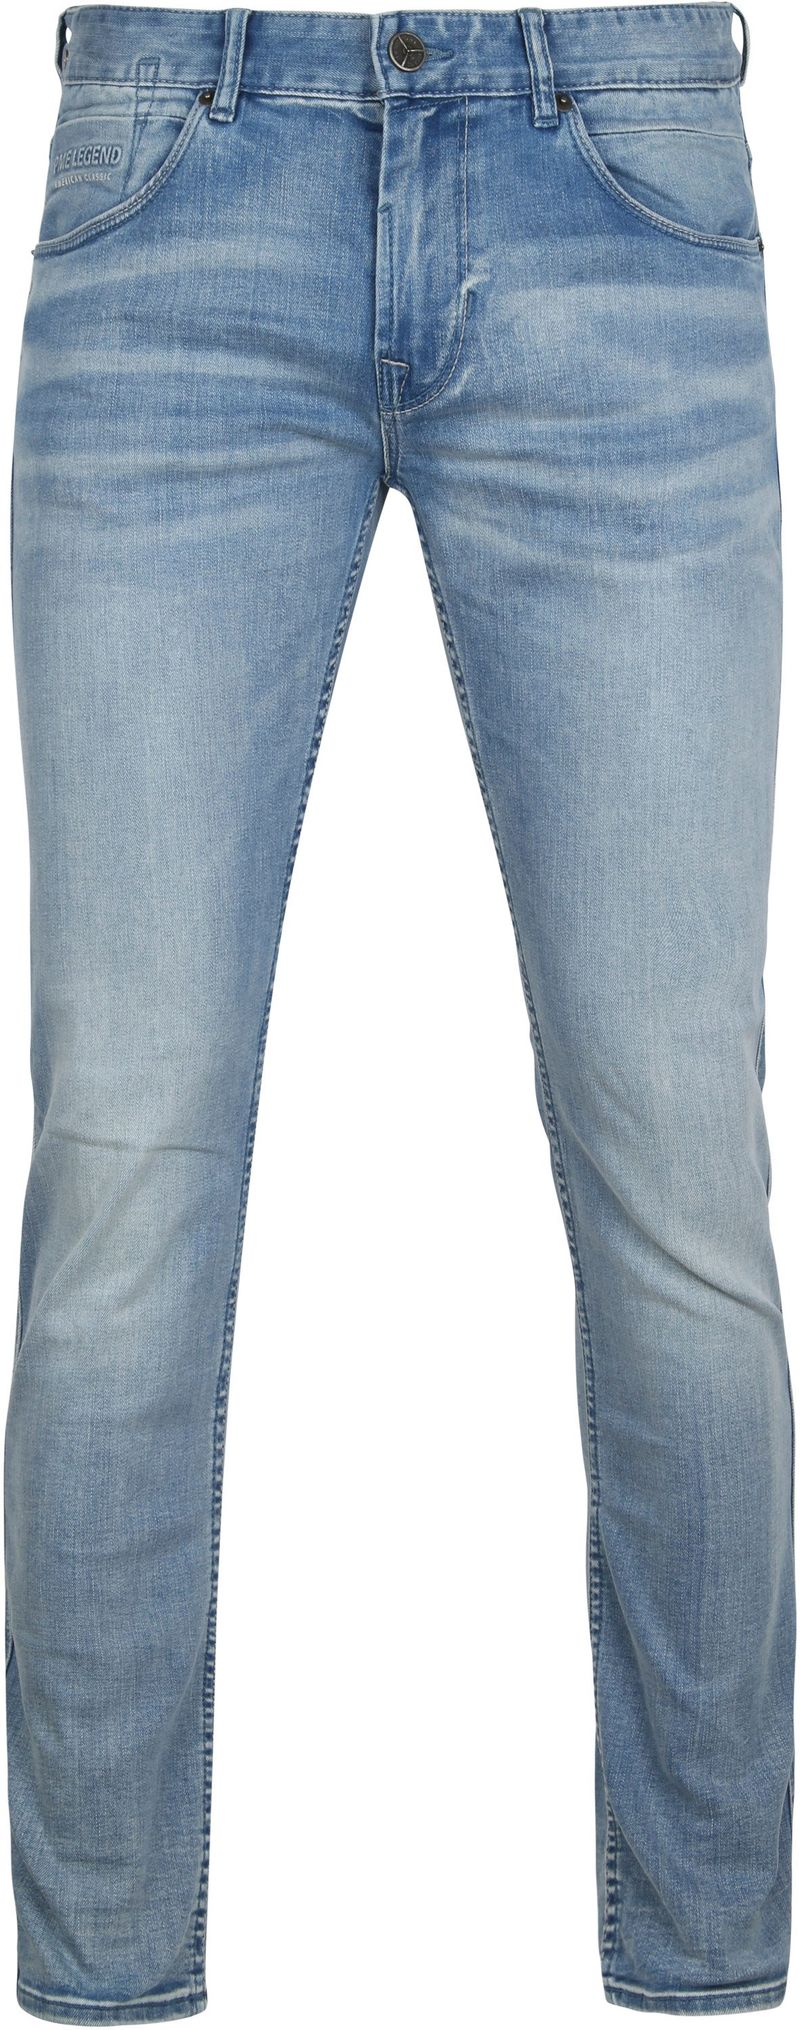 PME Legend Nightflight Jeans Blau - Größe W 36 - L 36 günstig online kaufen